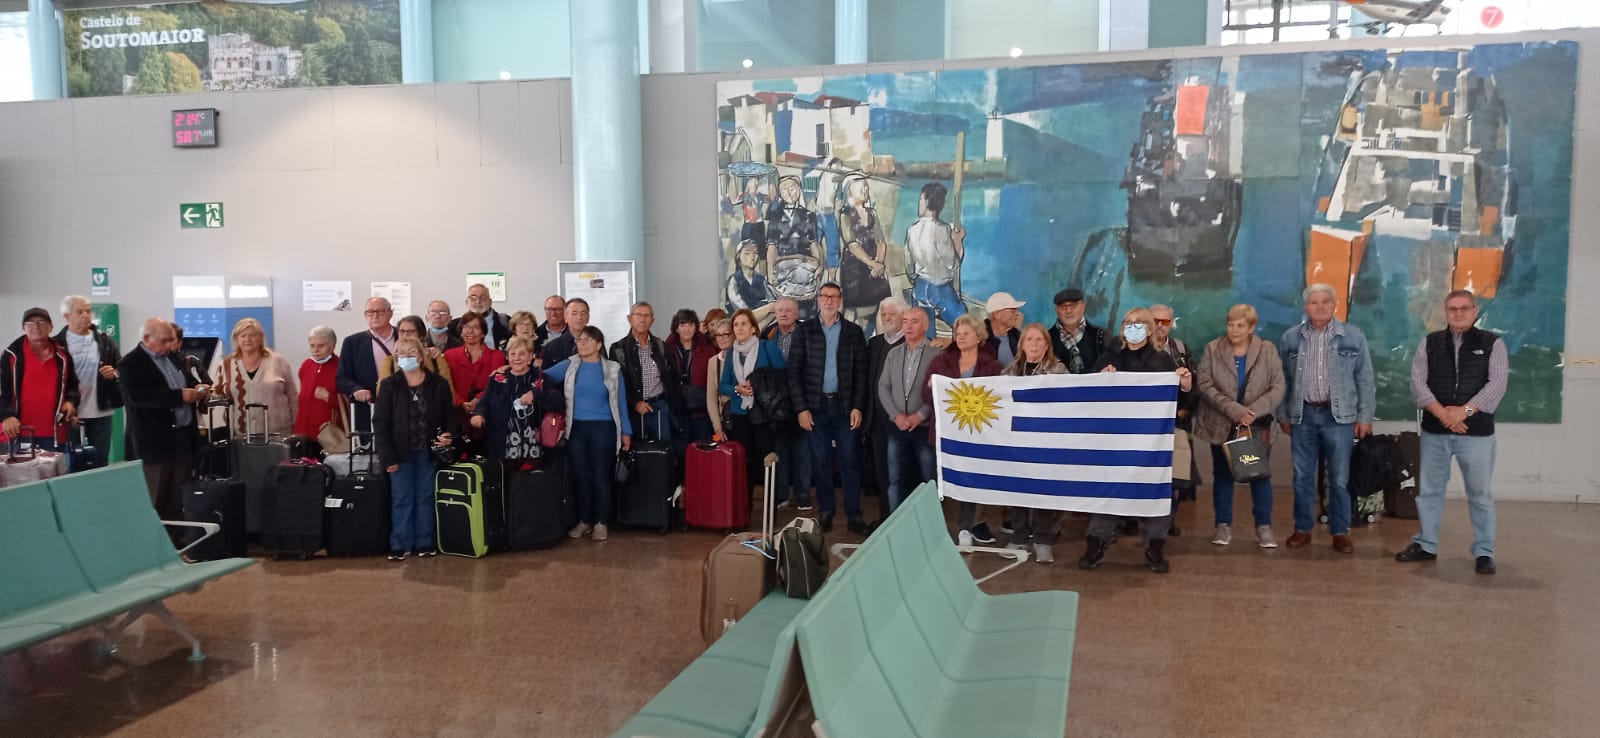 Imagen de la llegada de las y los participantes procedentes de Uruguay y Brasil